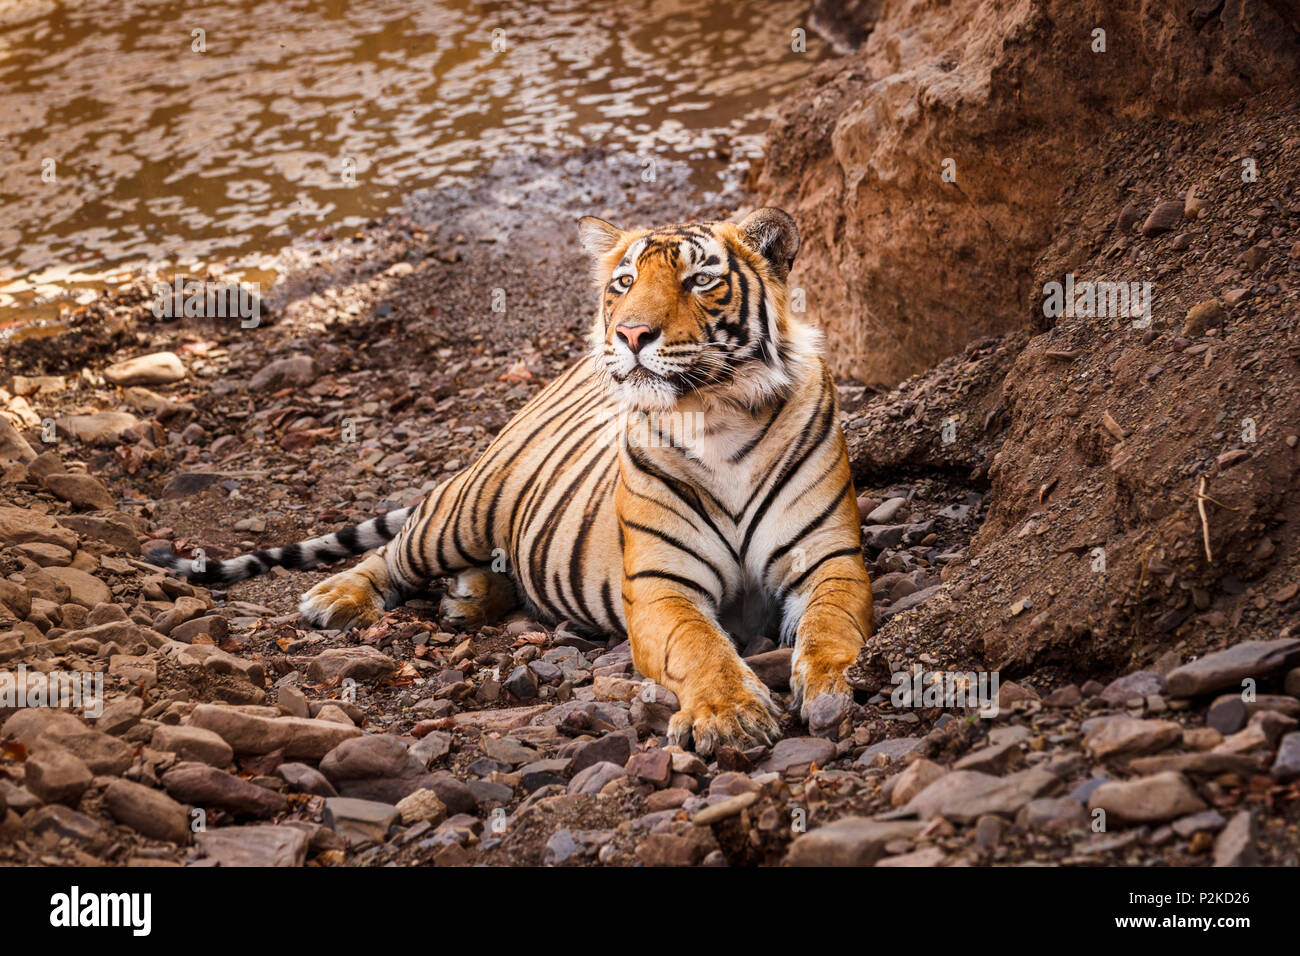 Männlichen sub-nach Bengal Tiger (Panthera tigris) in Ruhe suchen auf felsigen Boden von einem Wasserloch, Ranthambore Nationalpark, Rajasthan, Nordindien Stockfoto